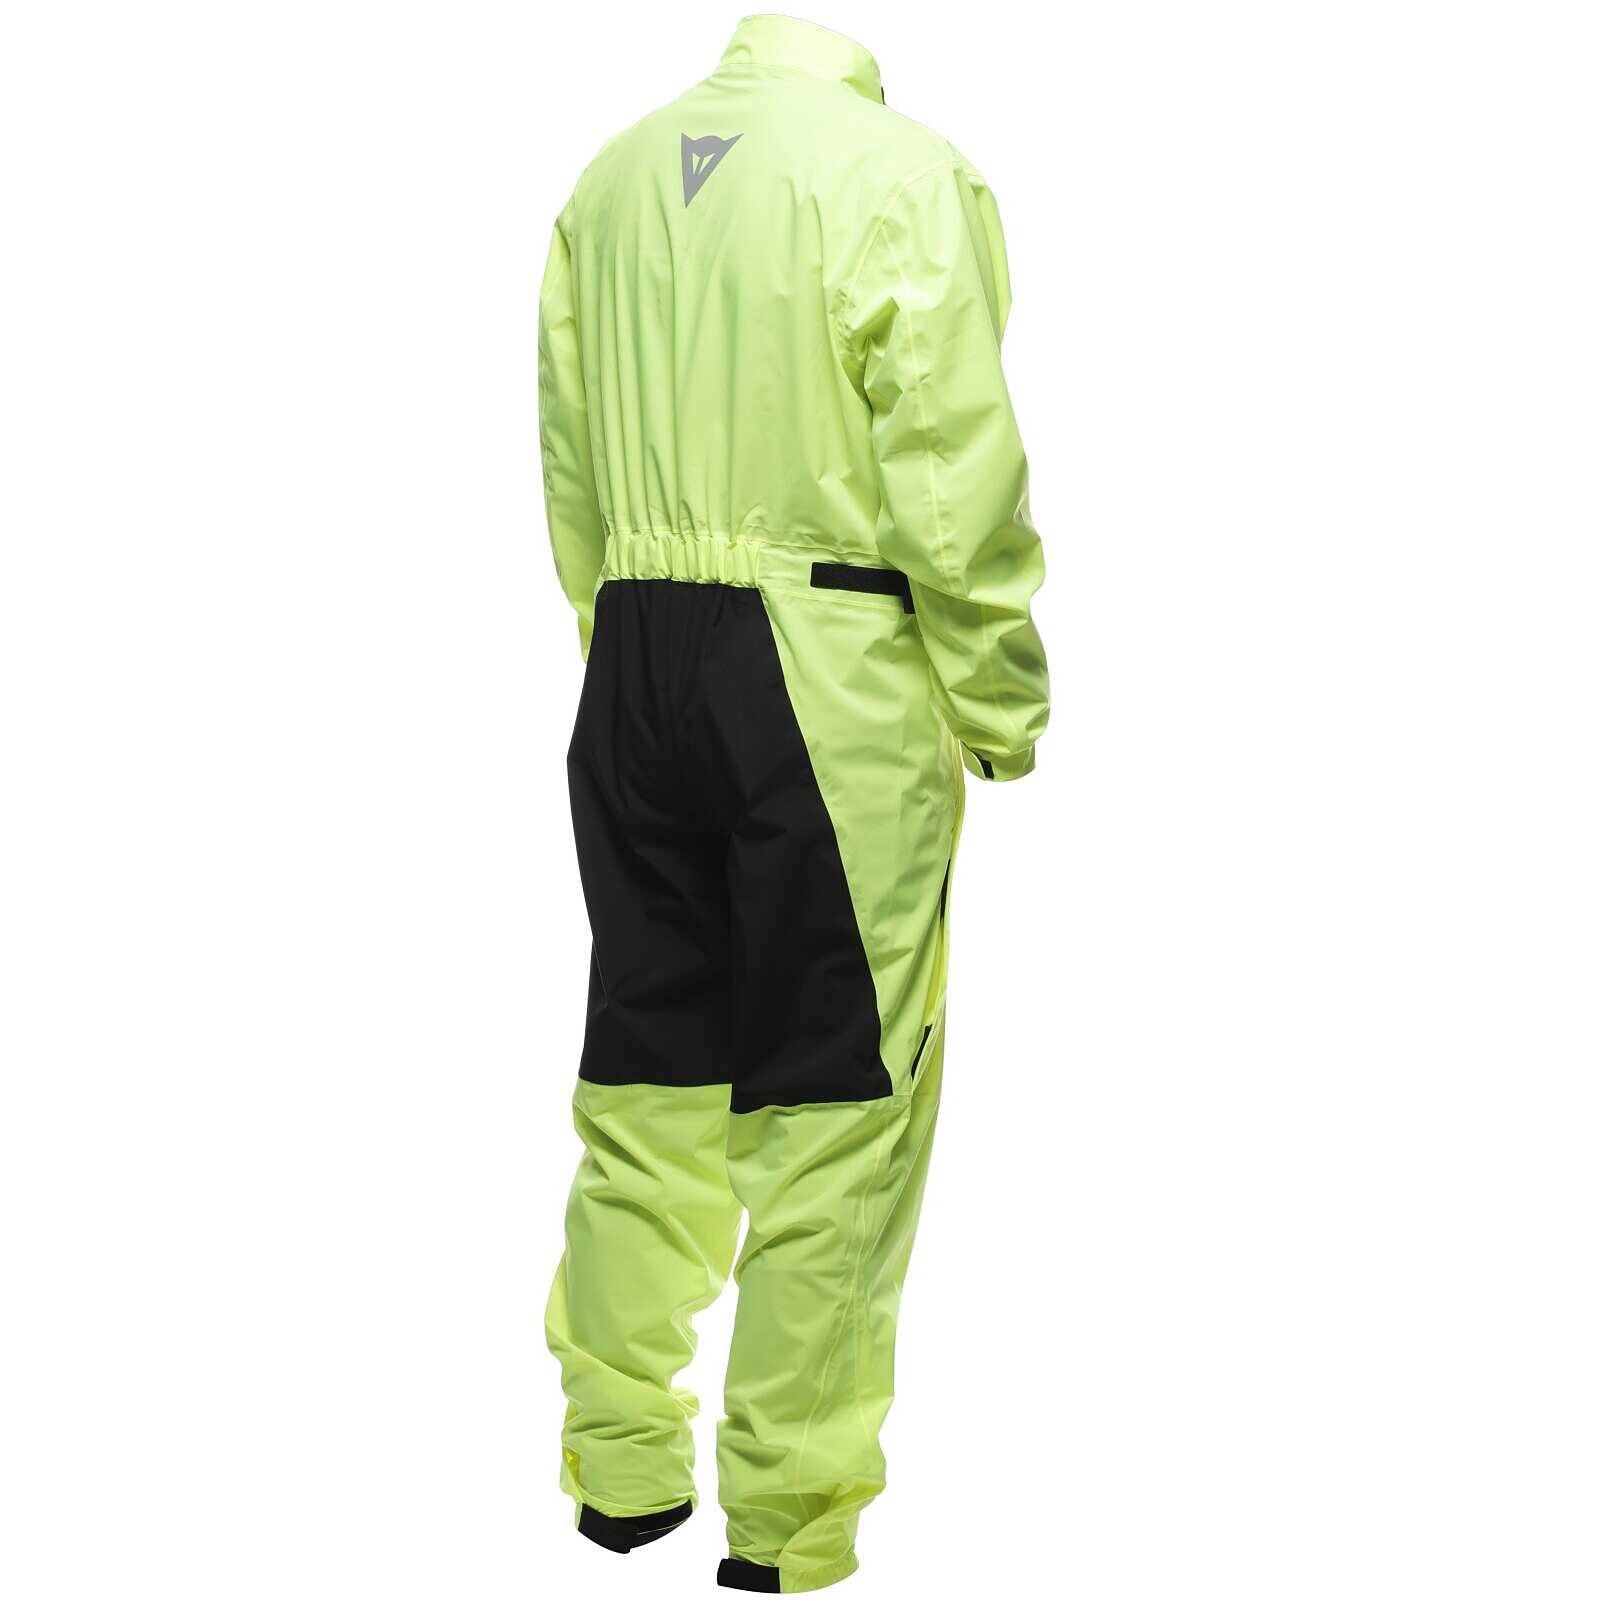 Tuta antipioggia iXS 1.0 nero-giallo fluo, Tute da pioggia, Abbigliamento  da pioggia, Abbigliamento, Moto